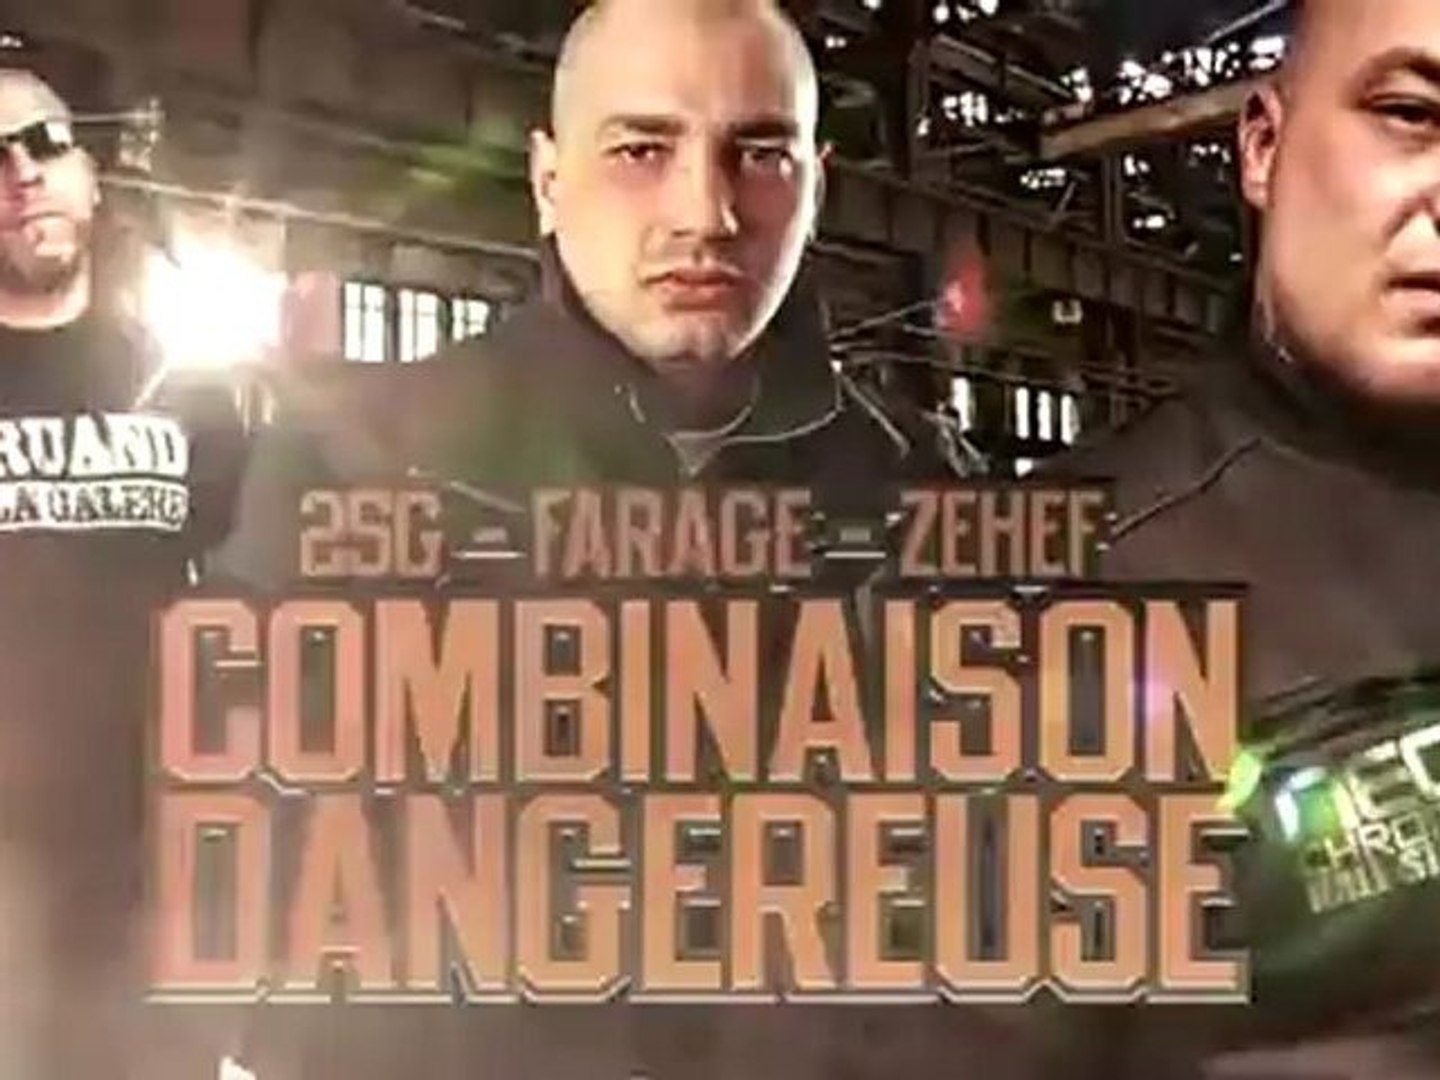 25G ft. Farage et Zehef - Combinaison dangereuse - Vidéo Dailymotion